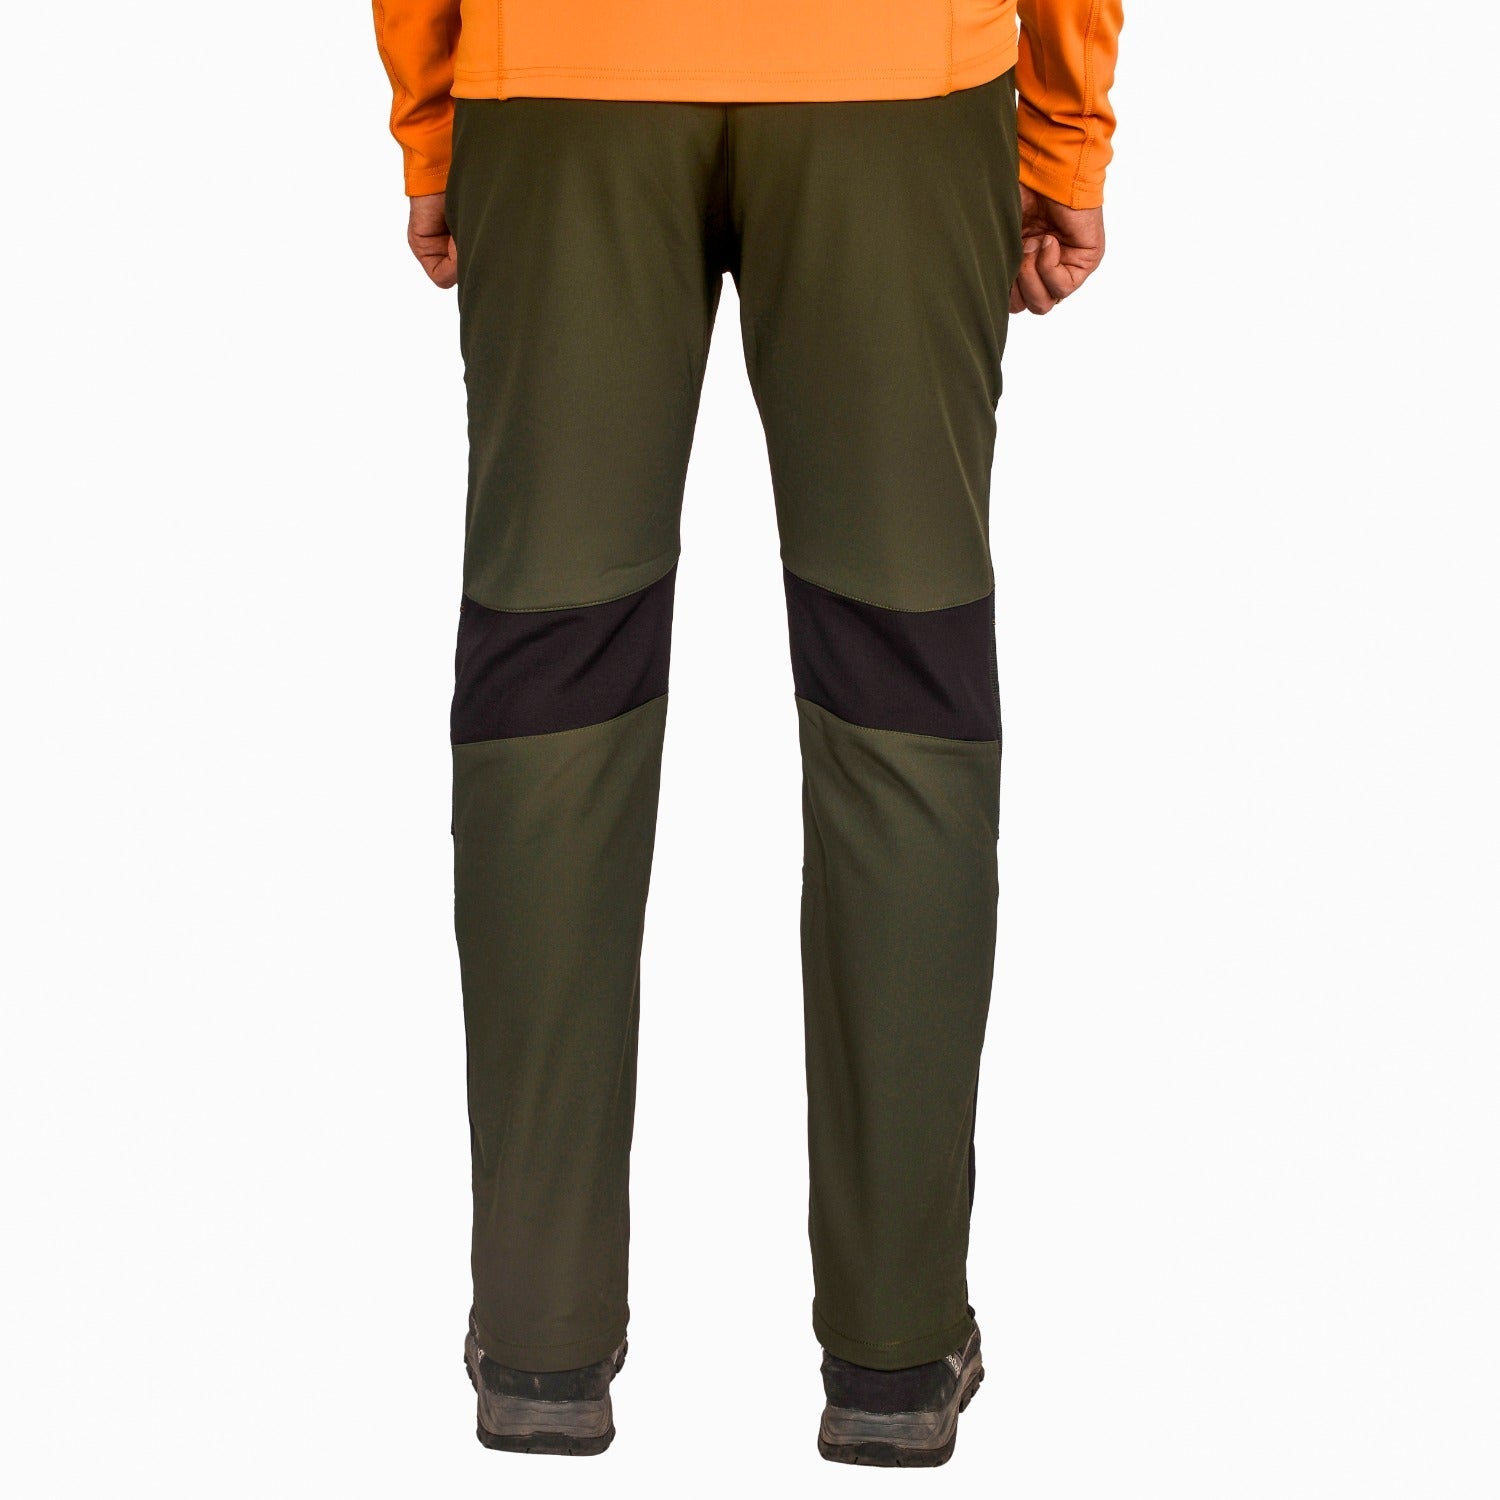 Buy Gokyo K2 Cold Weather Trekking & Outdoor Sherpa Pants | Trekking & Hiking Pants at Gokyo Outdoor Clothing & Gear